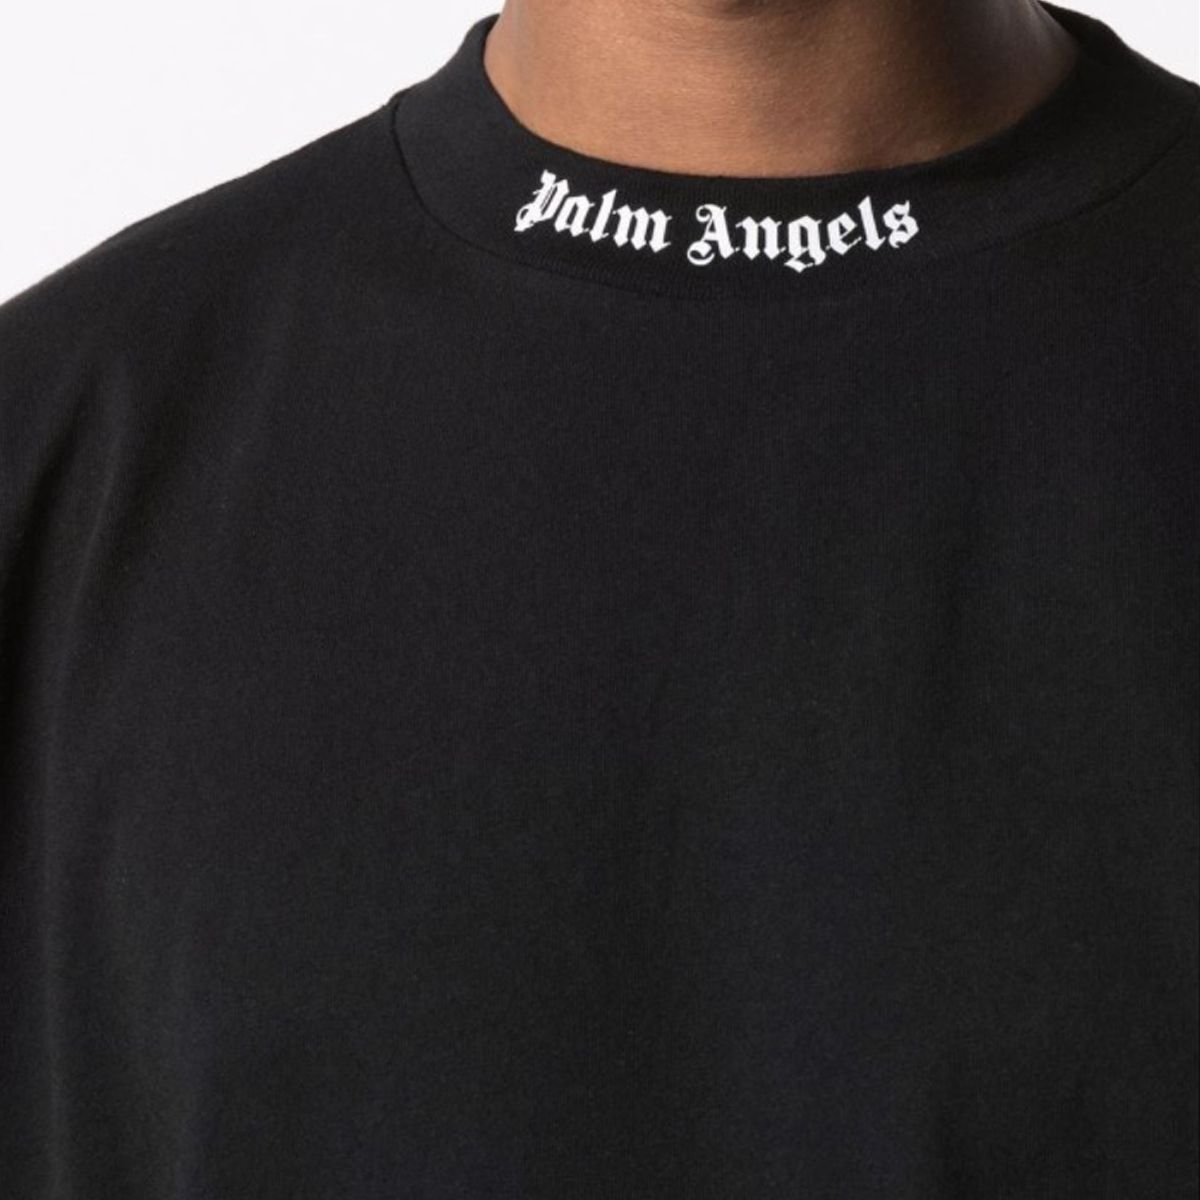 Best Seller Logo Black T-Shirt